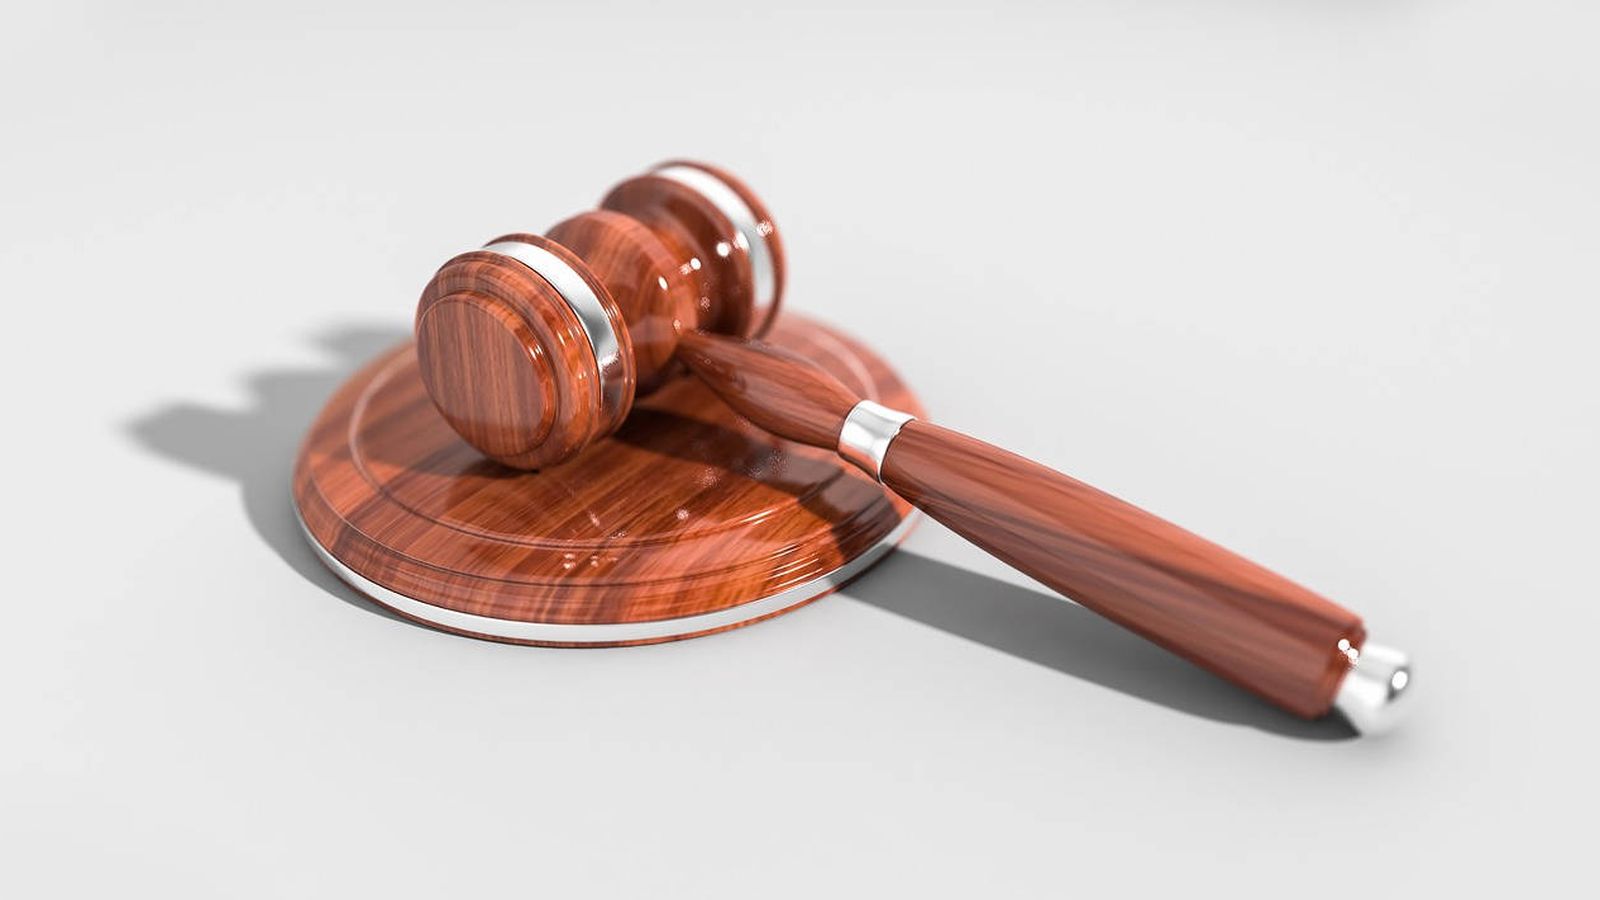 Foto: El juez dictó sentencia sobre un caso en el que tendría que haberse abstenido (Foto: Pixabay)